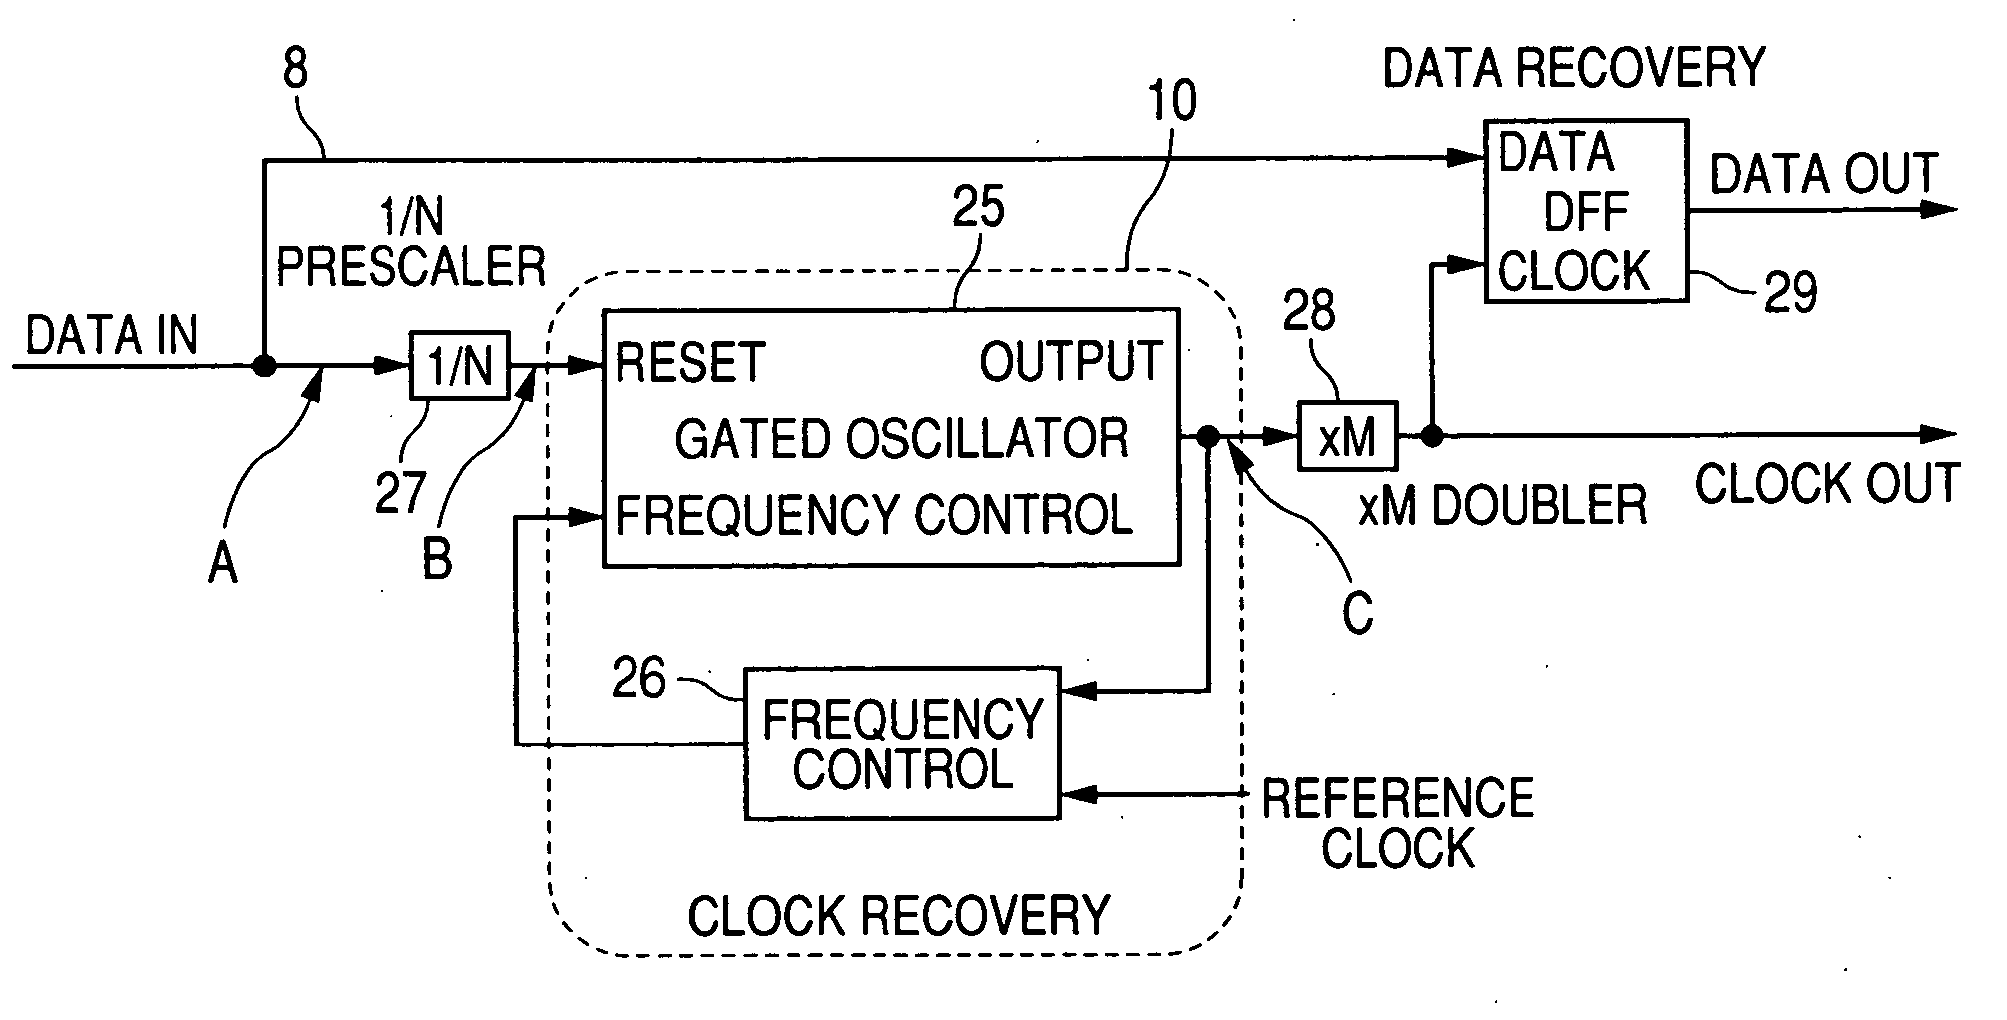 Clock reproducing apparatus